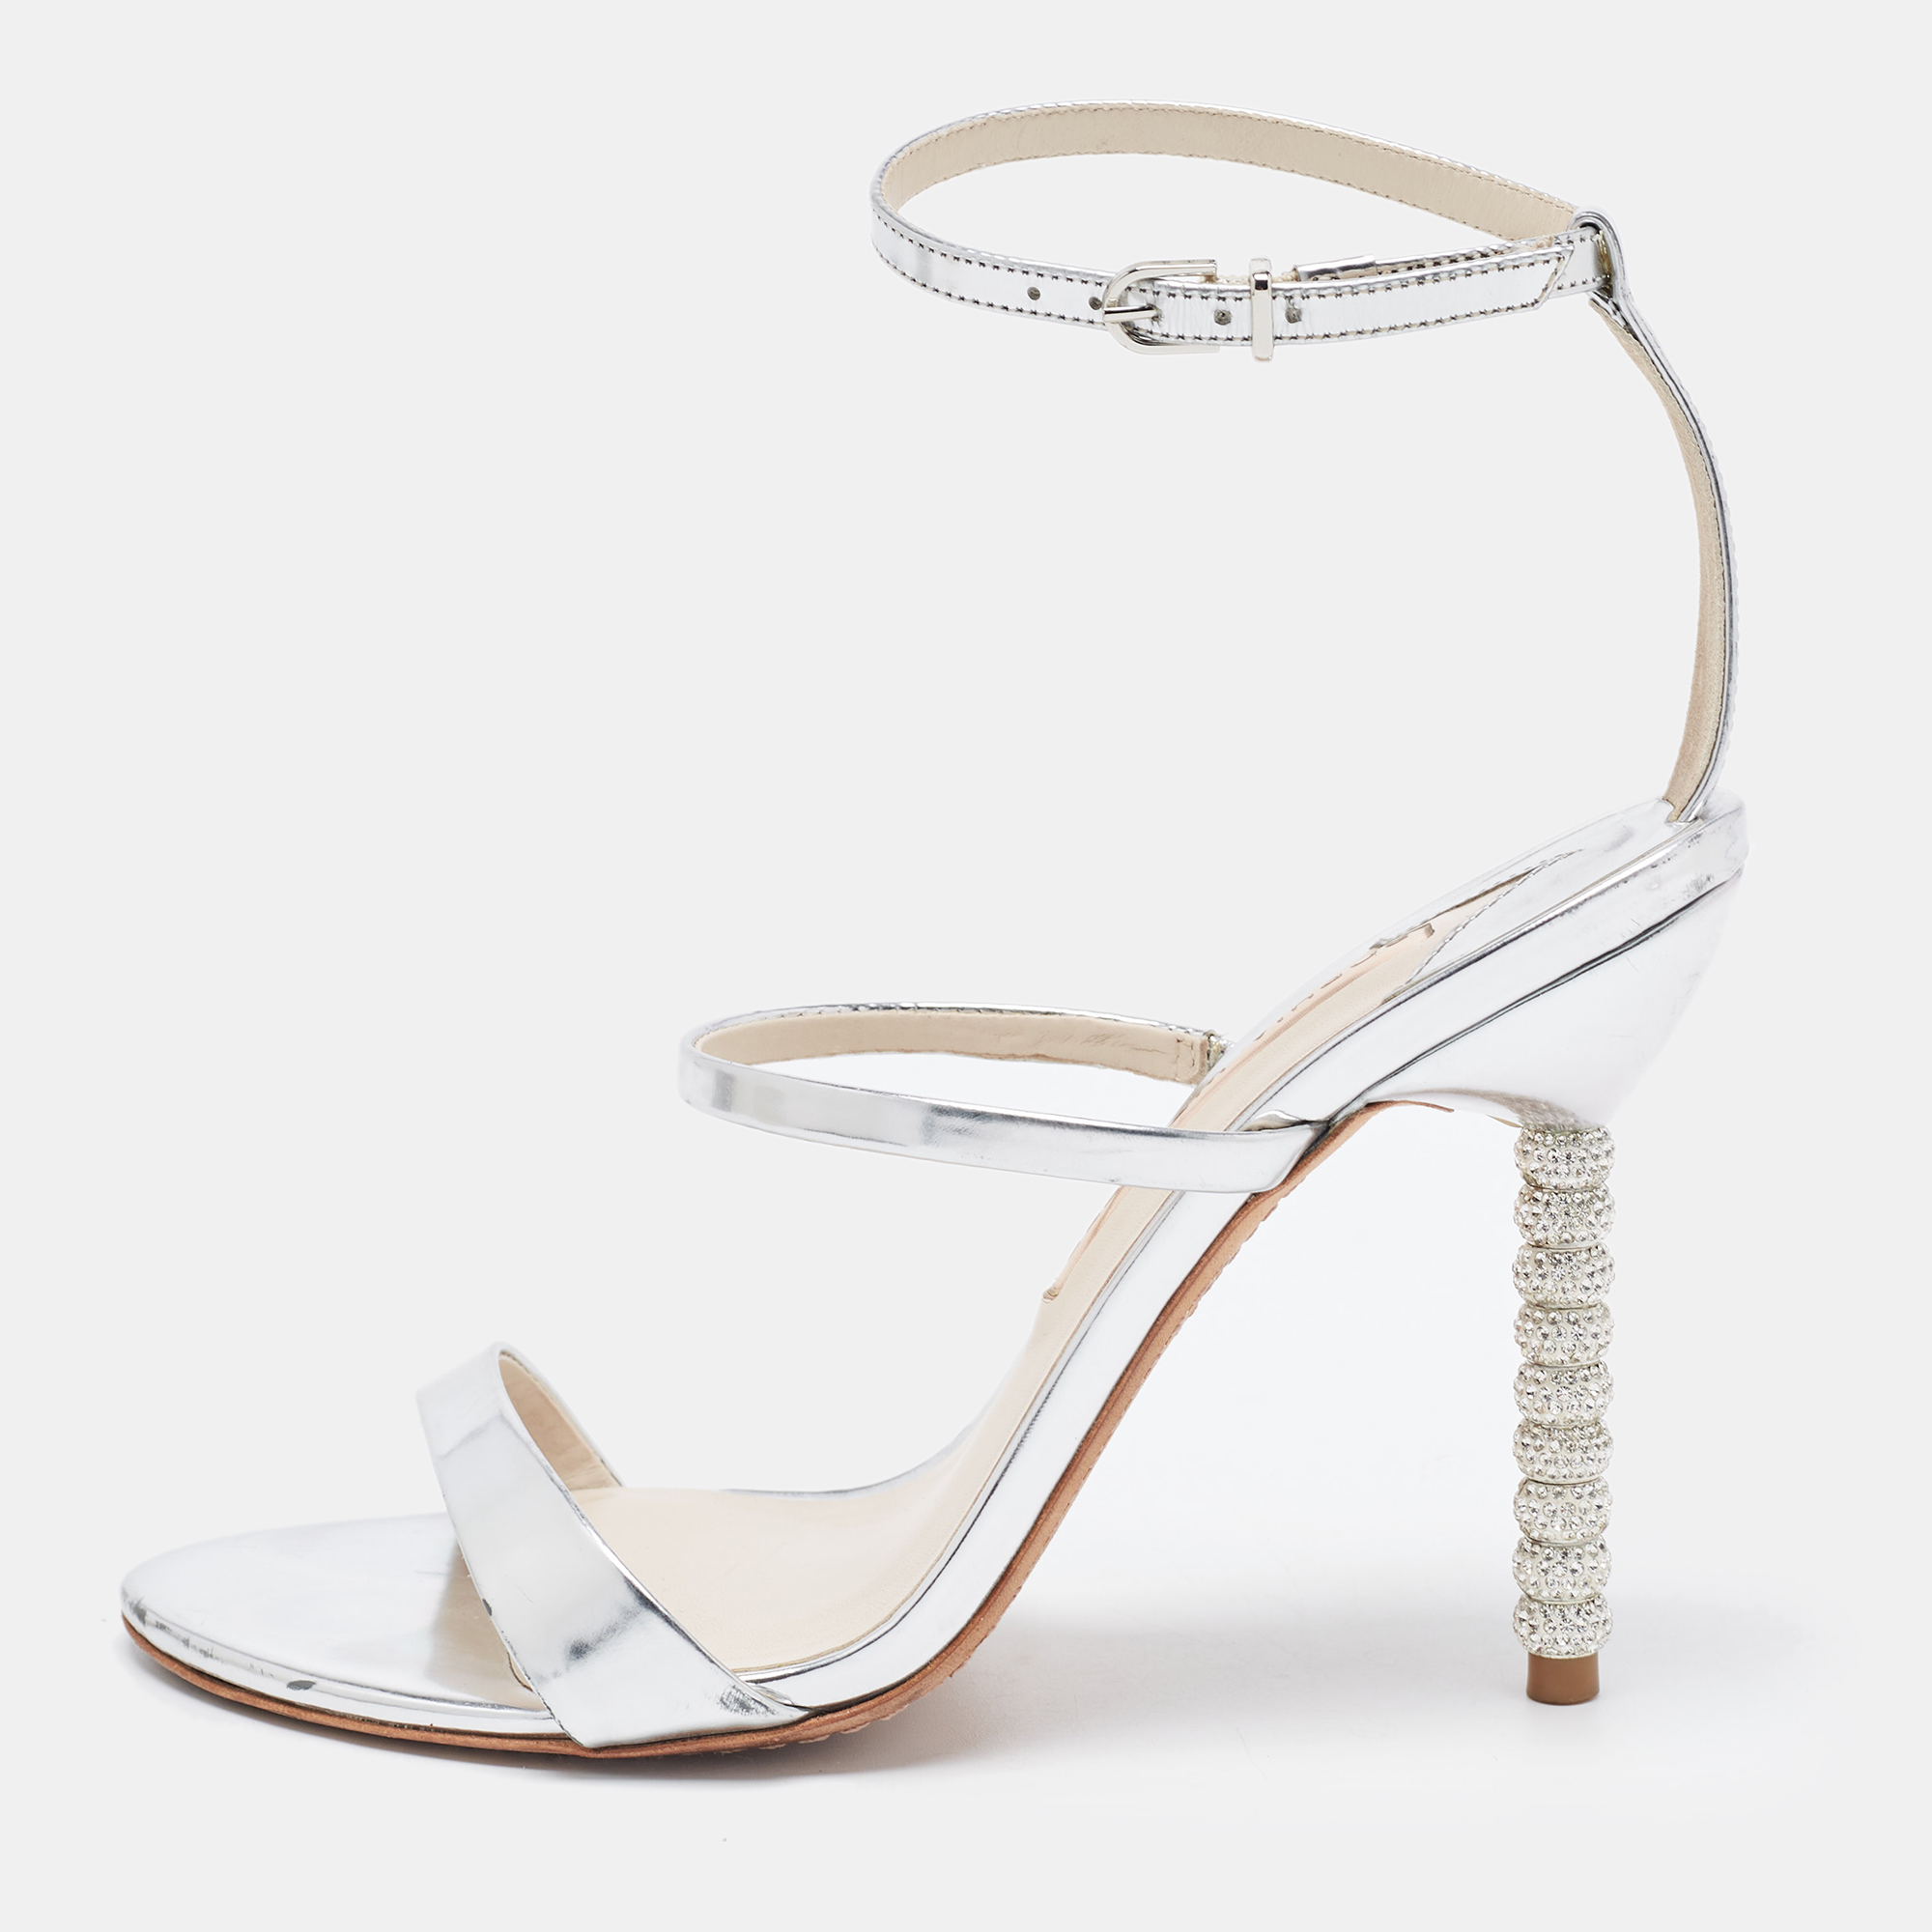 Sophia webster silver patent rosalind ankle strap sandals size 38.5